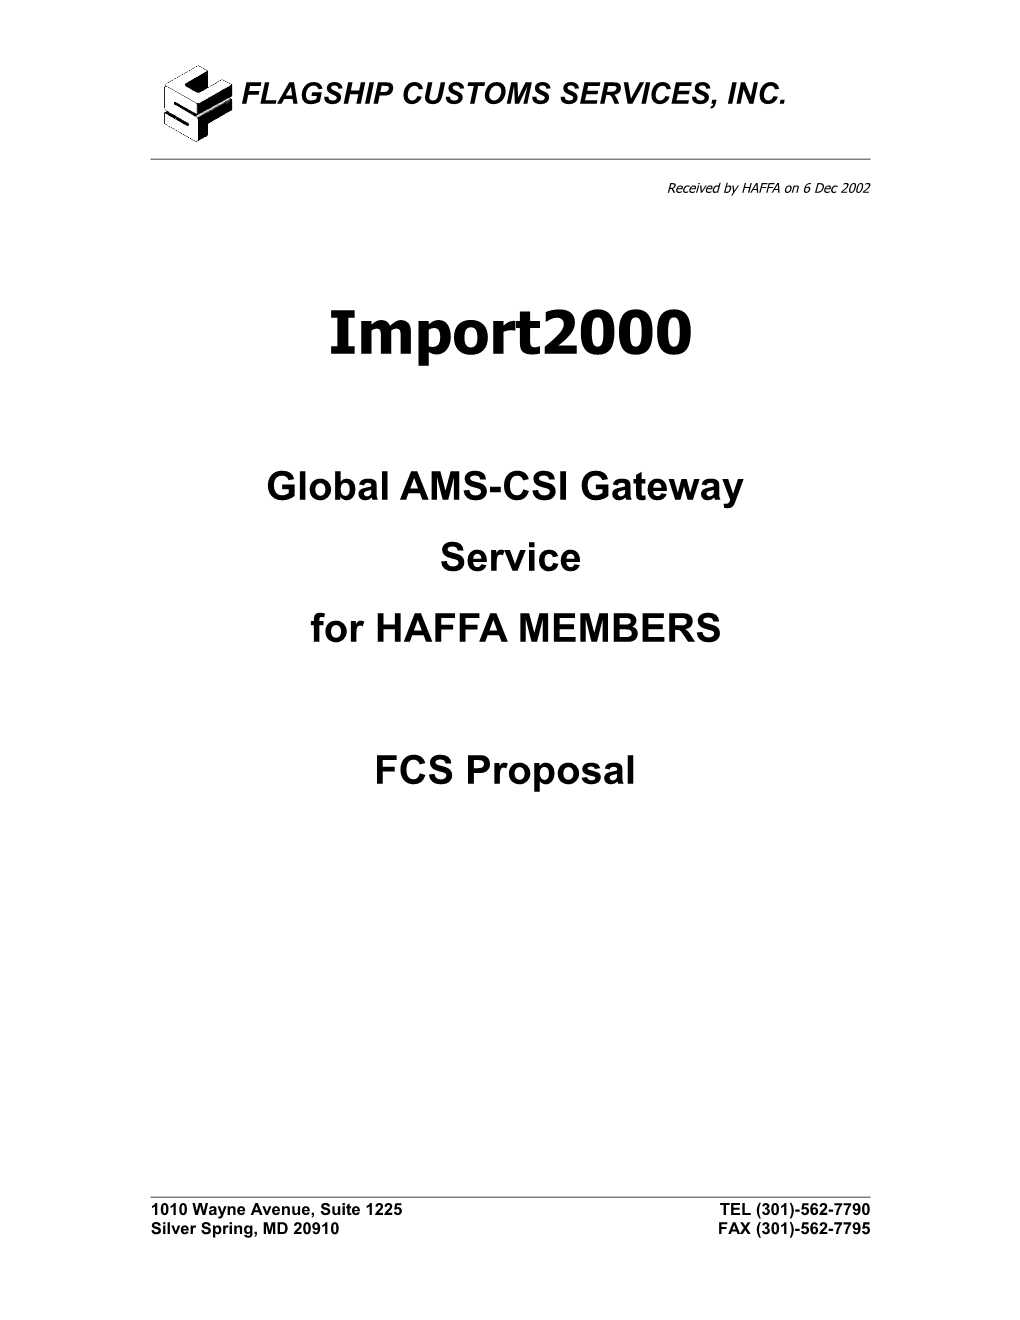 Global AMS-CSI Gateway